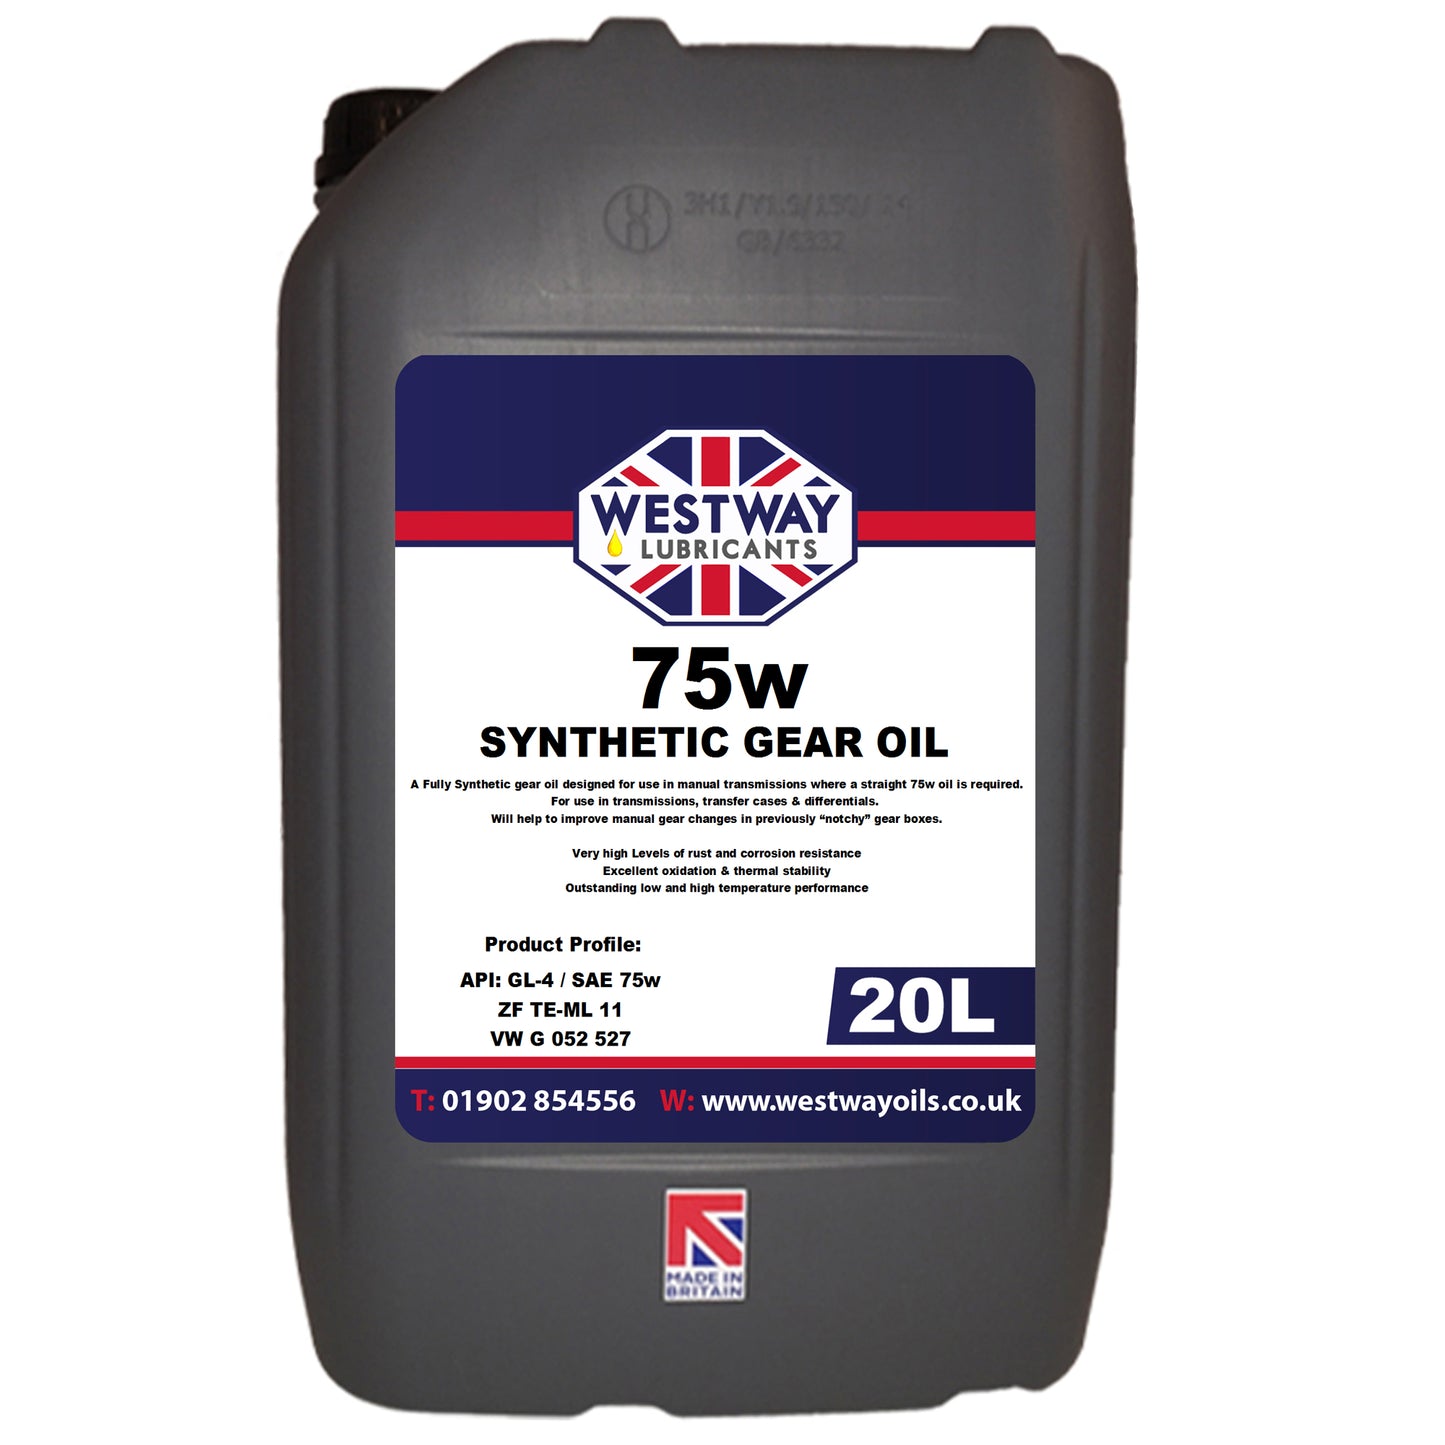 75w GL-4 Synthetic Gear Oil